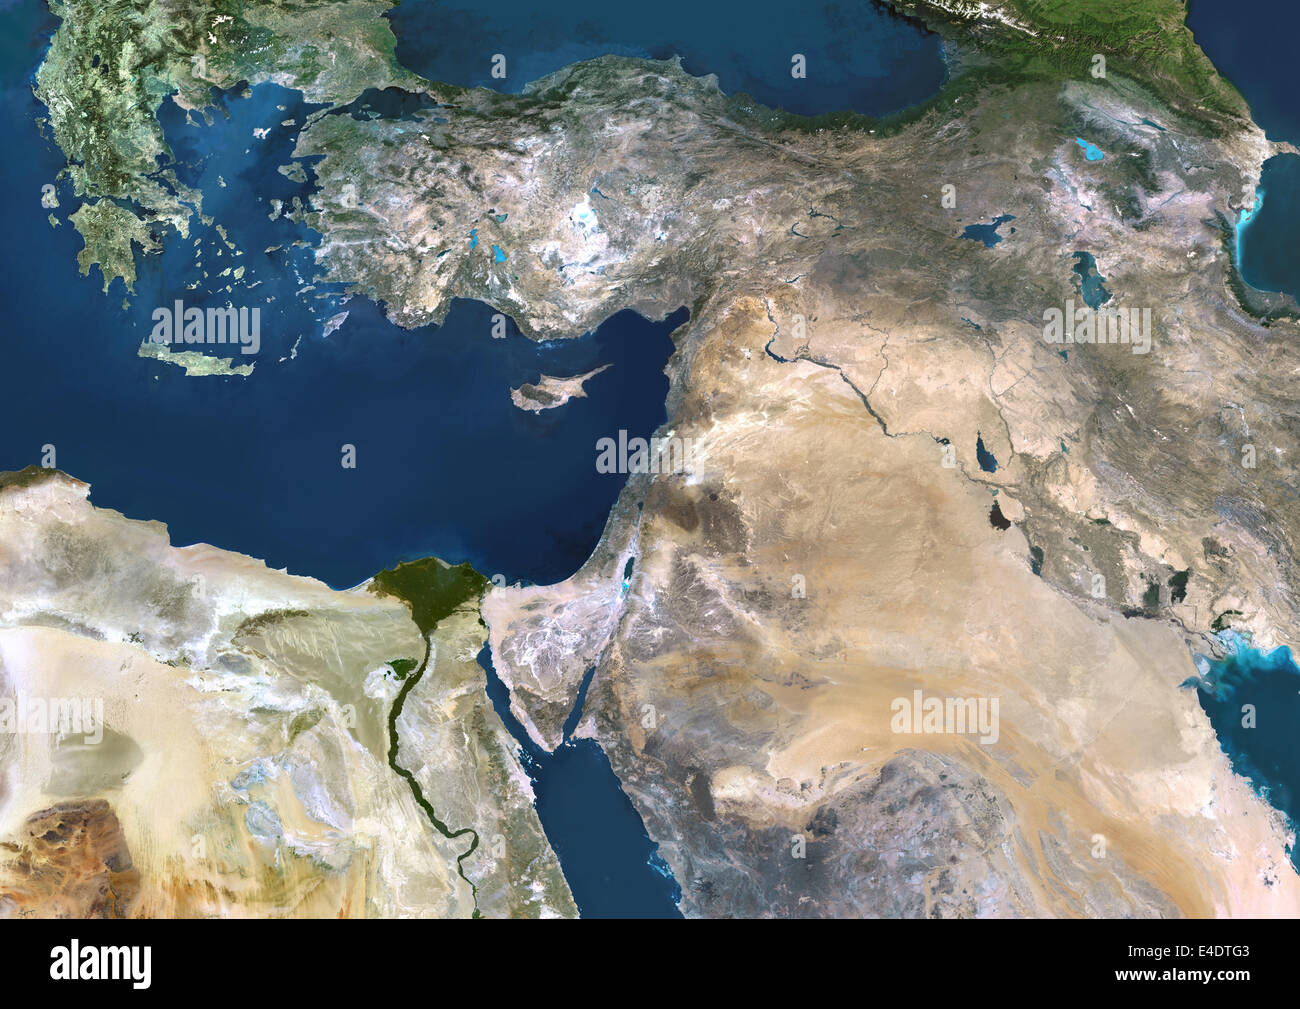 Cercano Oriente, Imagen de satélite de color verdadero. Cercano Oriente, imagen de satélite de color verdadero. Los desiertos (marrón claro) de Arabia Saudita domina Foto de stock